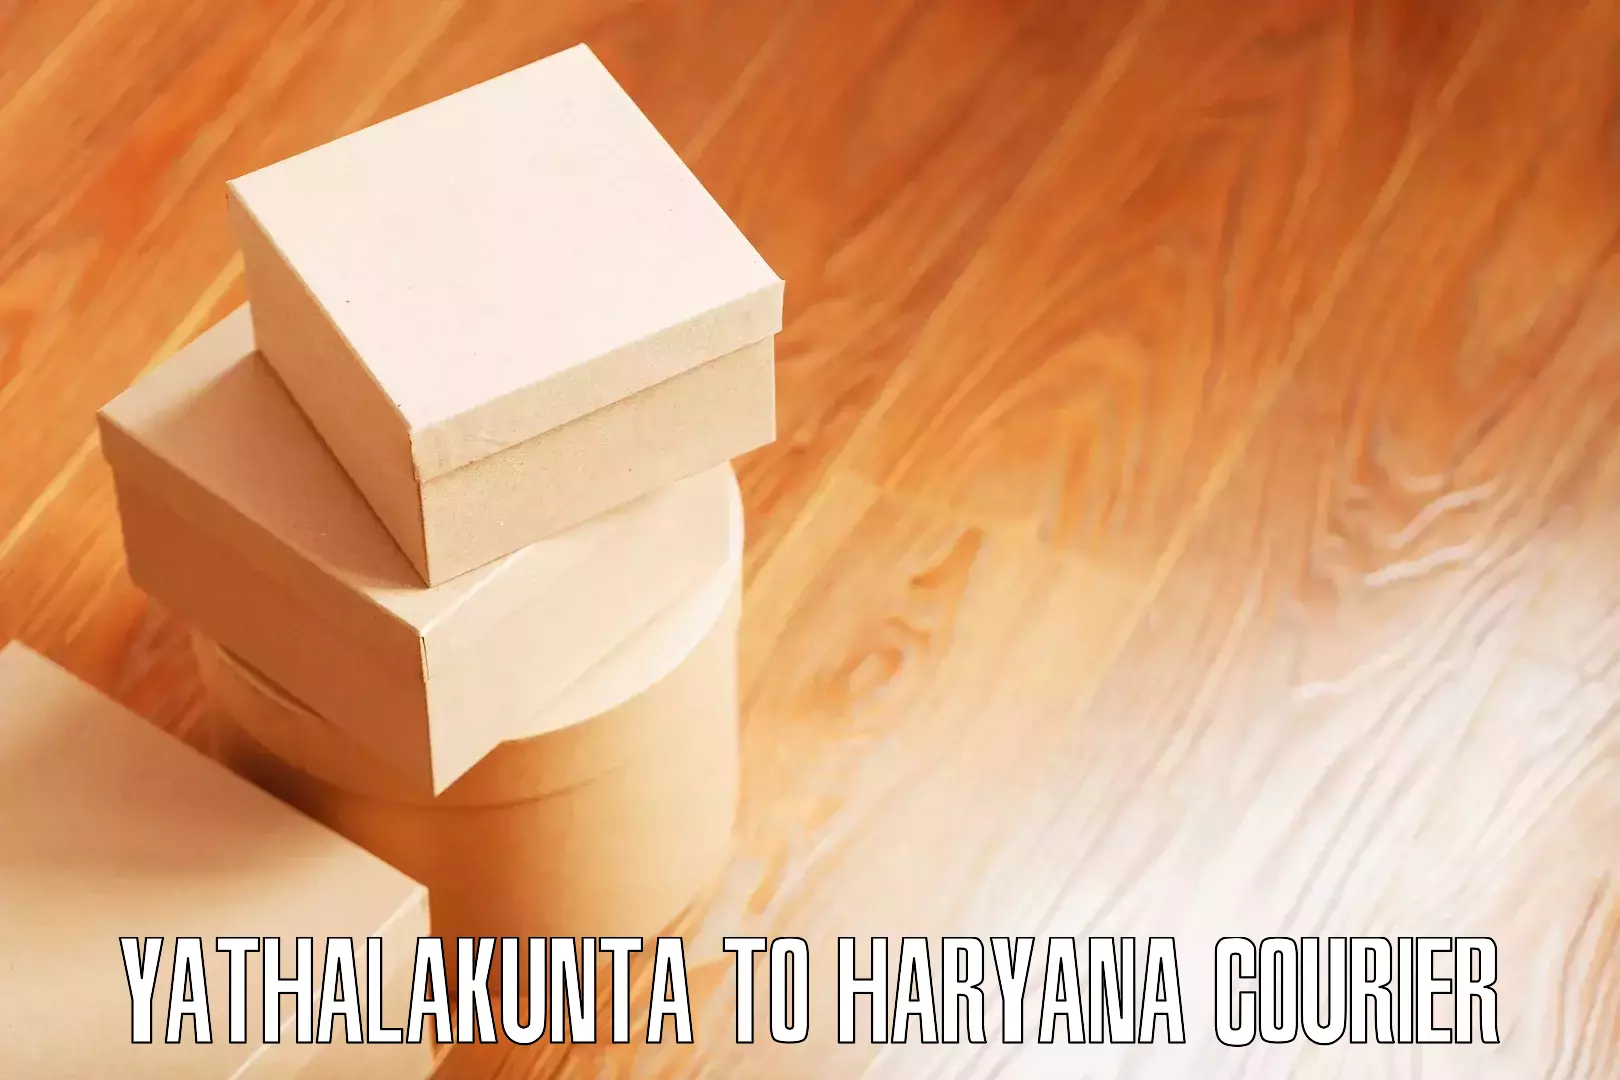 Residential furniture transport Yathalakunta to Haryana